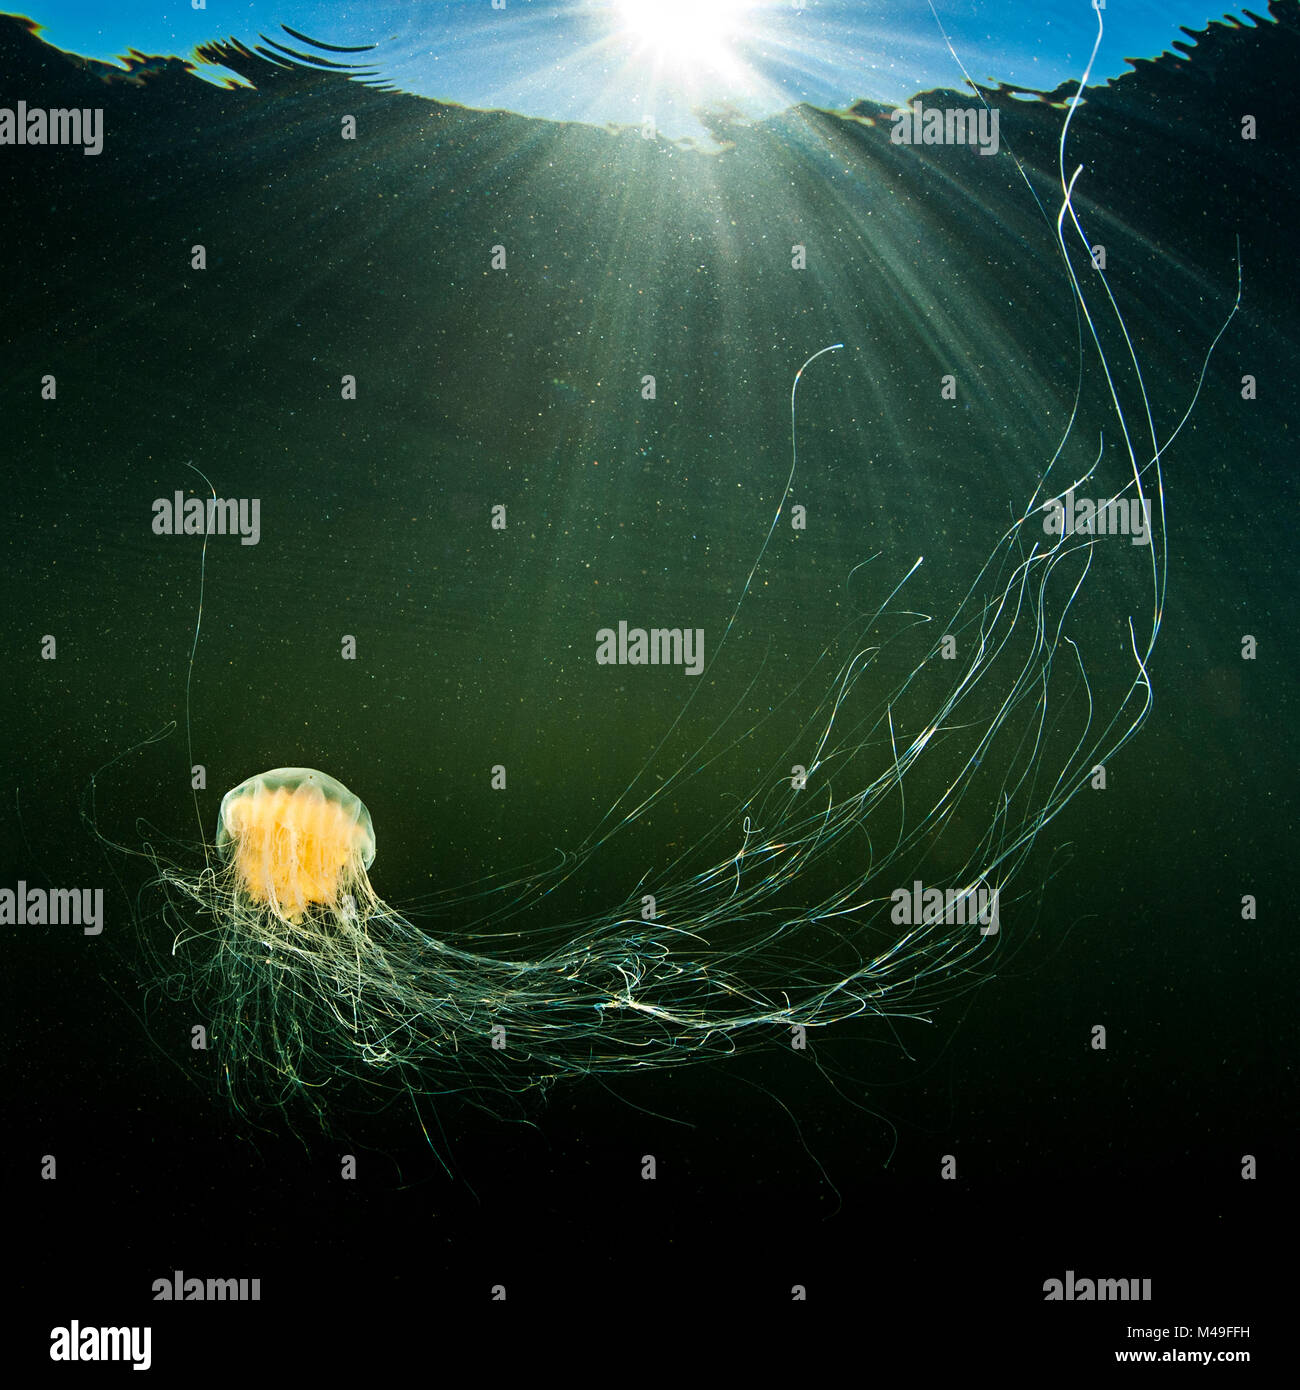 Leone la criniera medusa (Cyanea capillata) con alimentazione tentacoli diffondere il nuoto al sole in acque poco profonde. Gulen, Norvegia. A nord est dell' Oceano Atlantico. Foto Stock